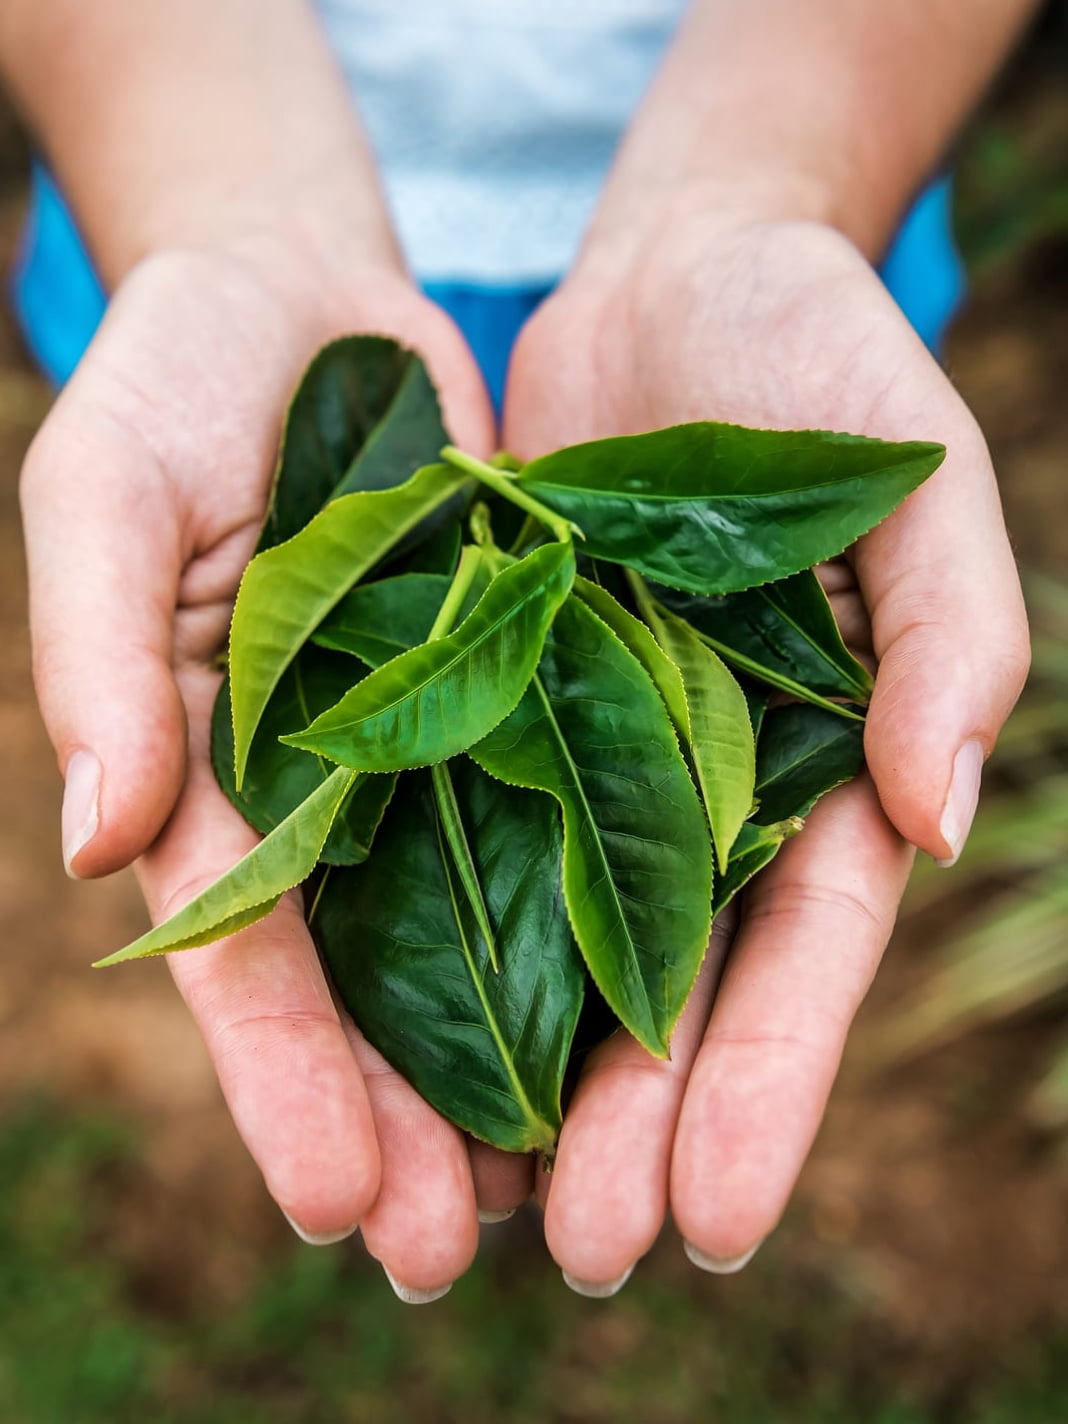 Raccolta del tè e classificazione delle foglie